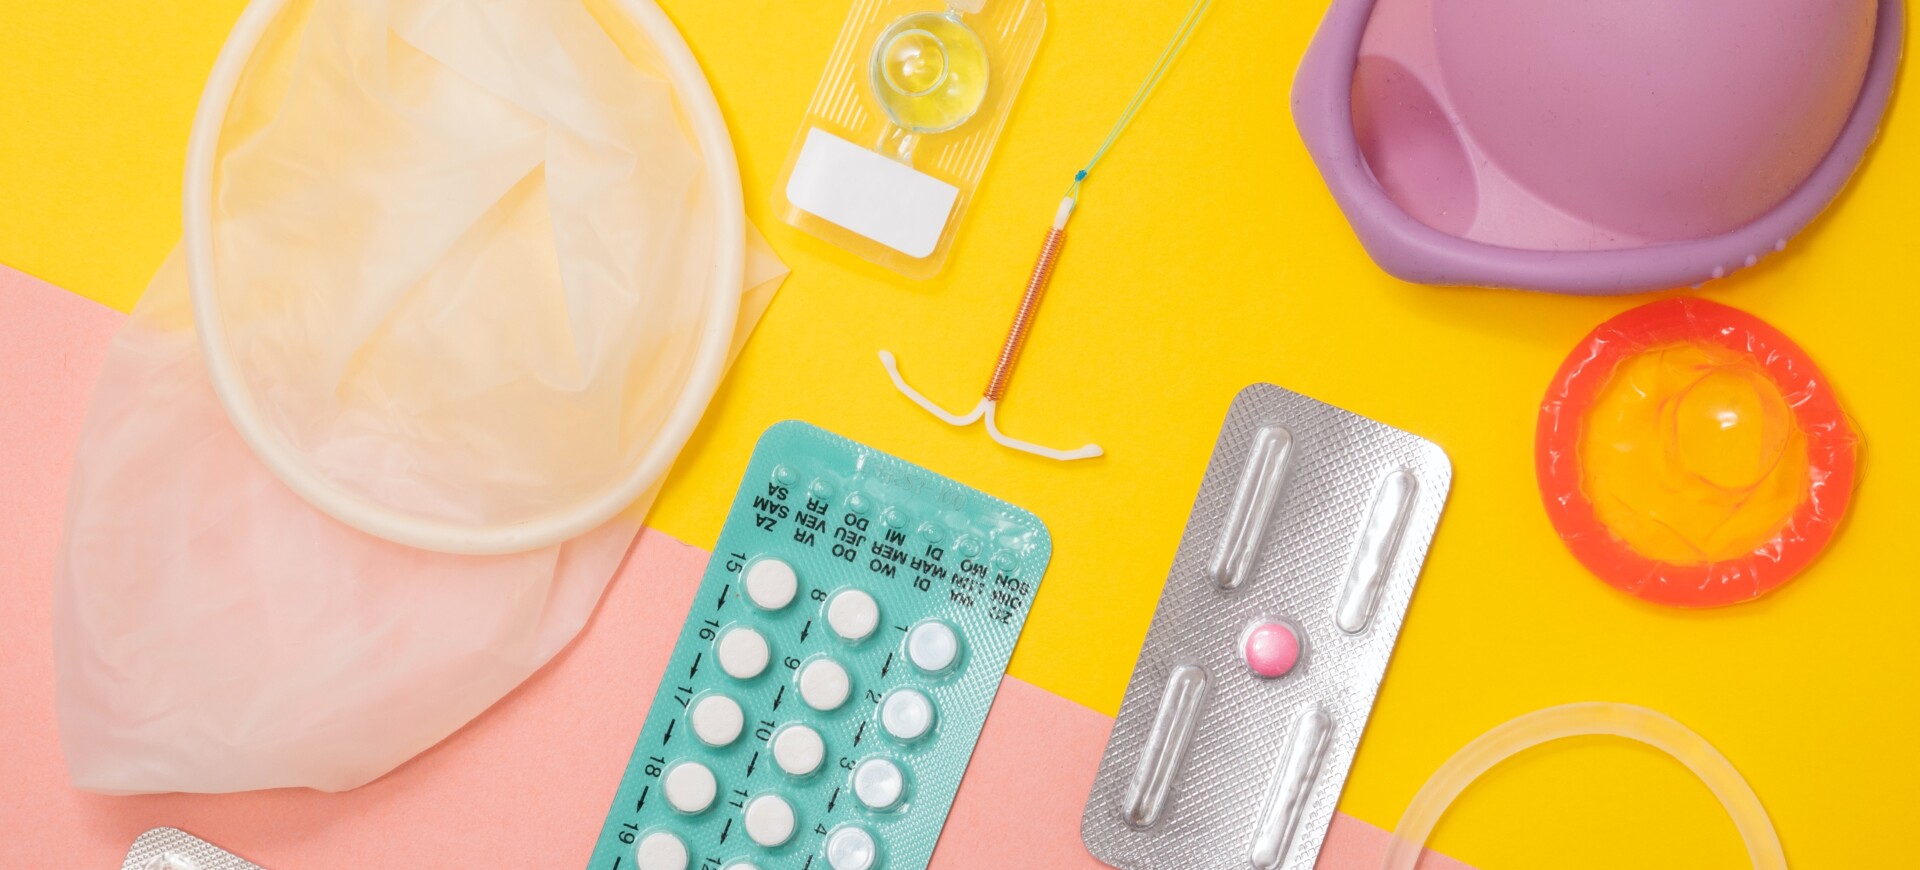 Care sunt cele mai sigure metode contraceptive